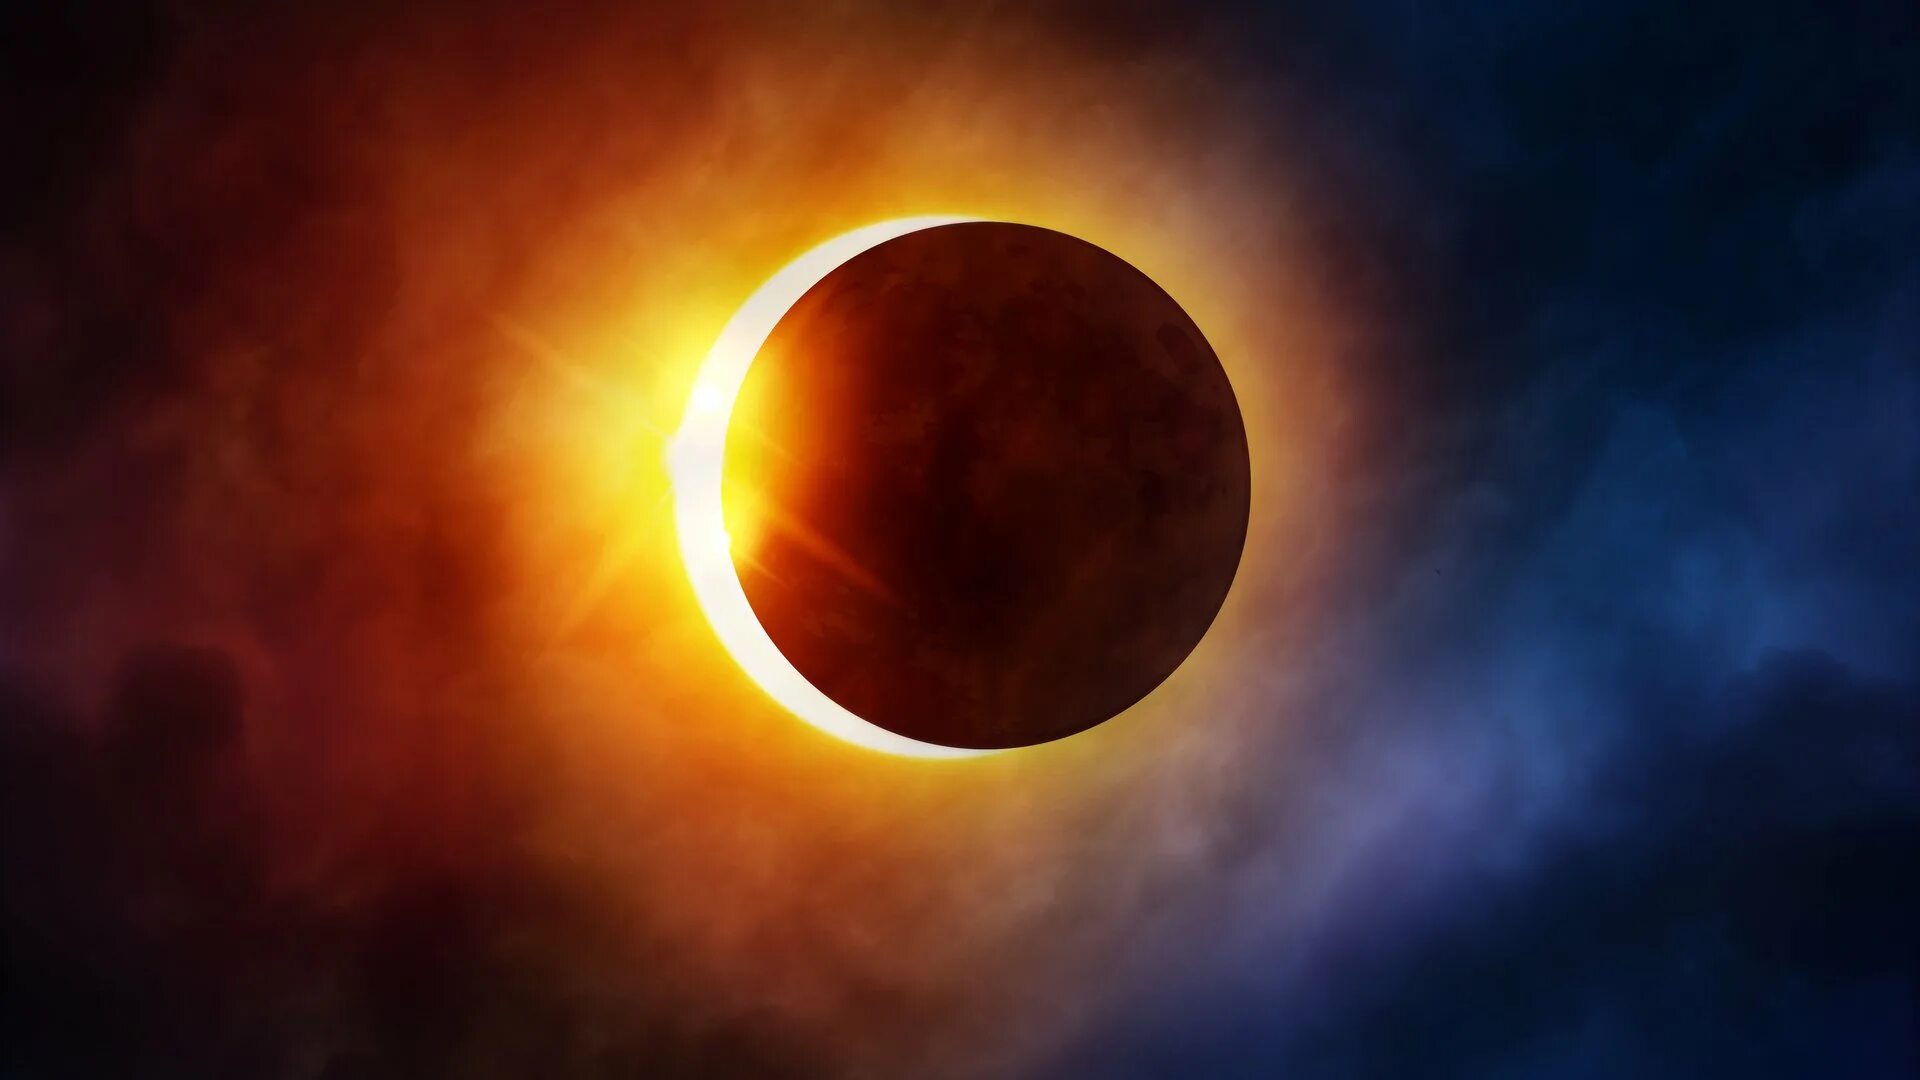 Lunar Eclipse Sun Eclipse. Солнечное затмение. Солнечное затмение фото. Солнечные и лунные затмения.